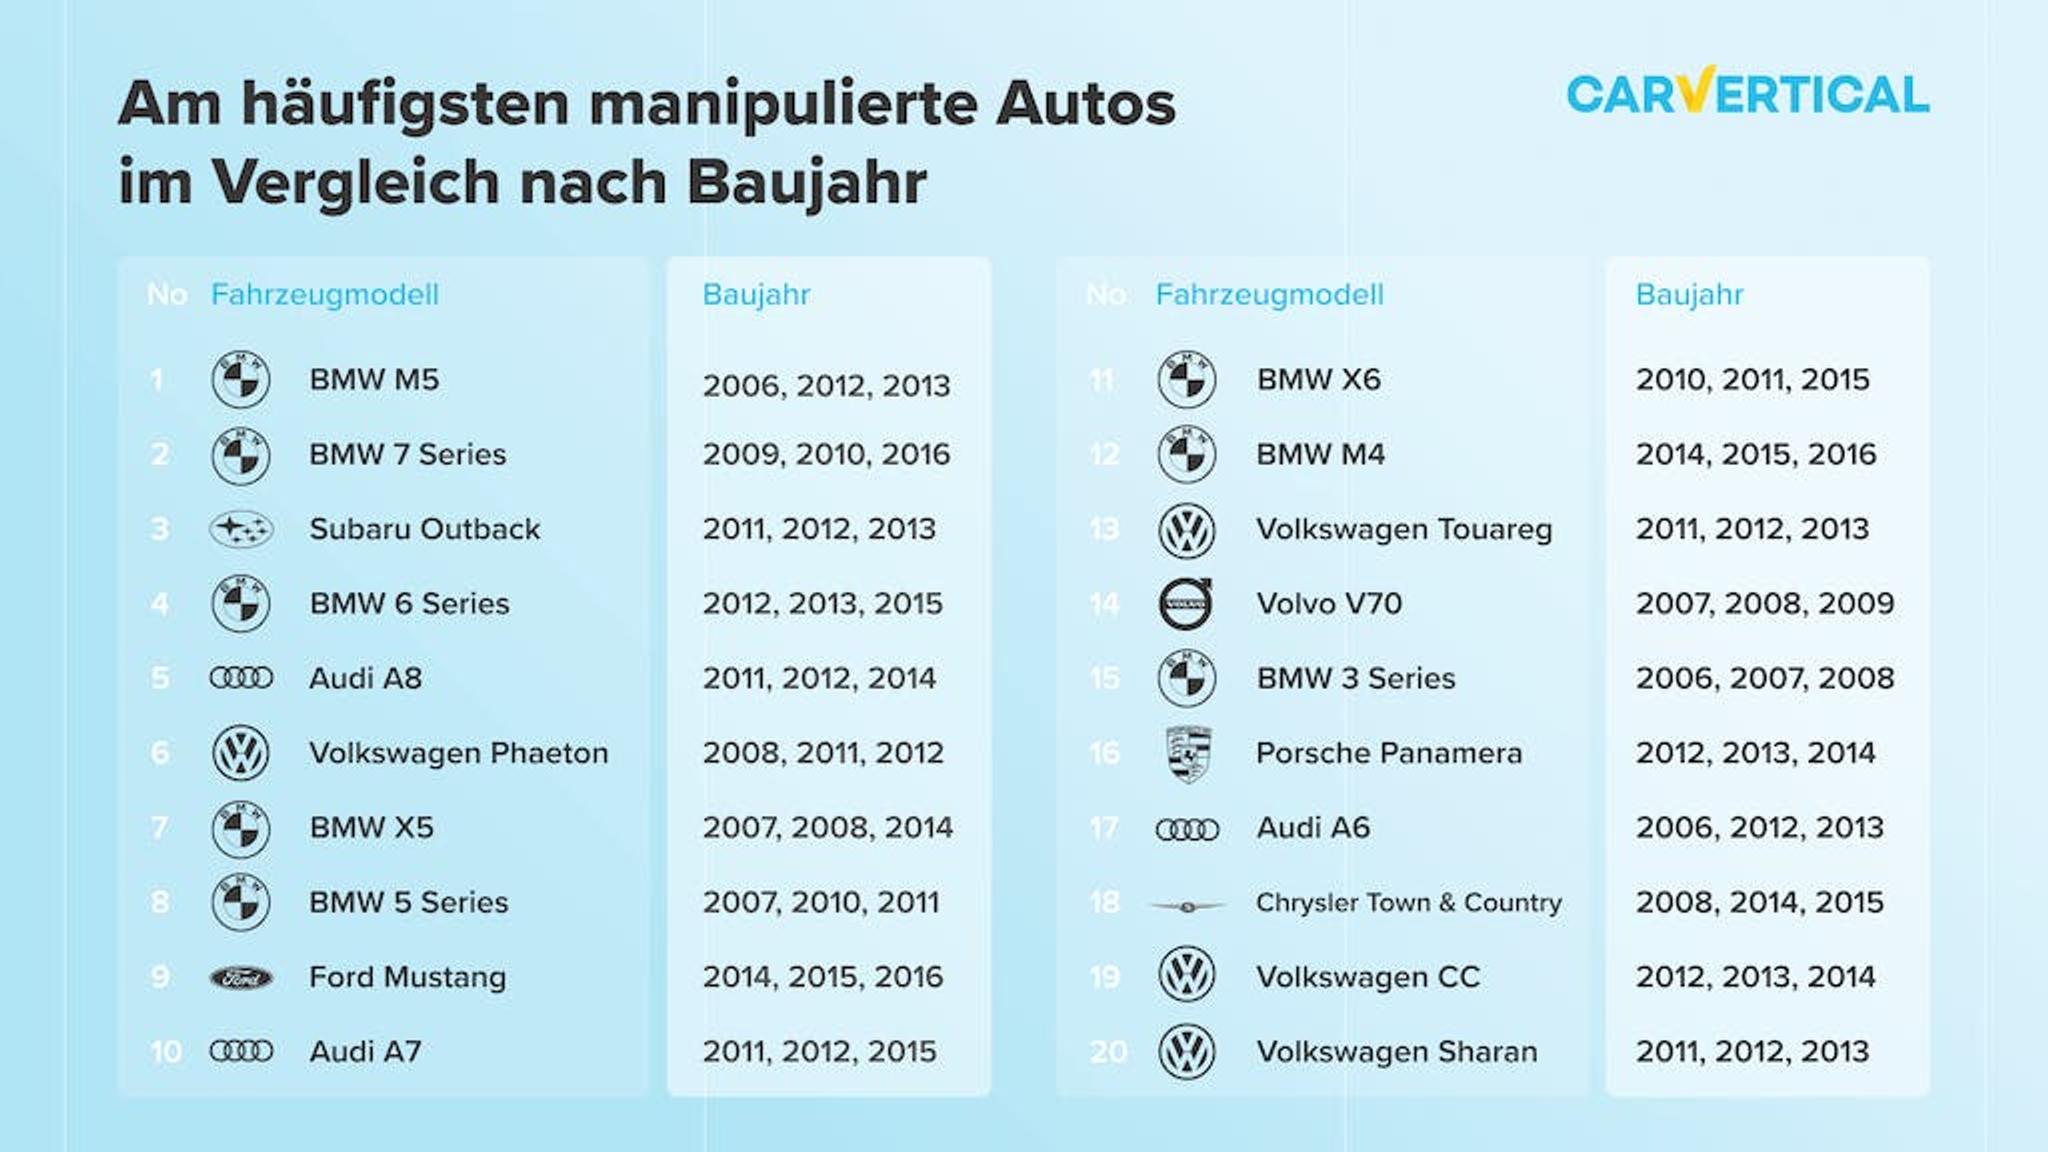 Am haufigsten manipulierte Autos im Vergleich nach Baujahr